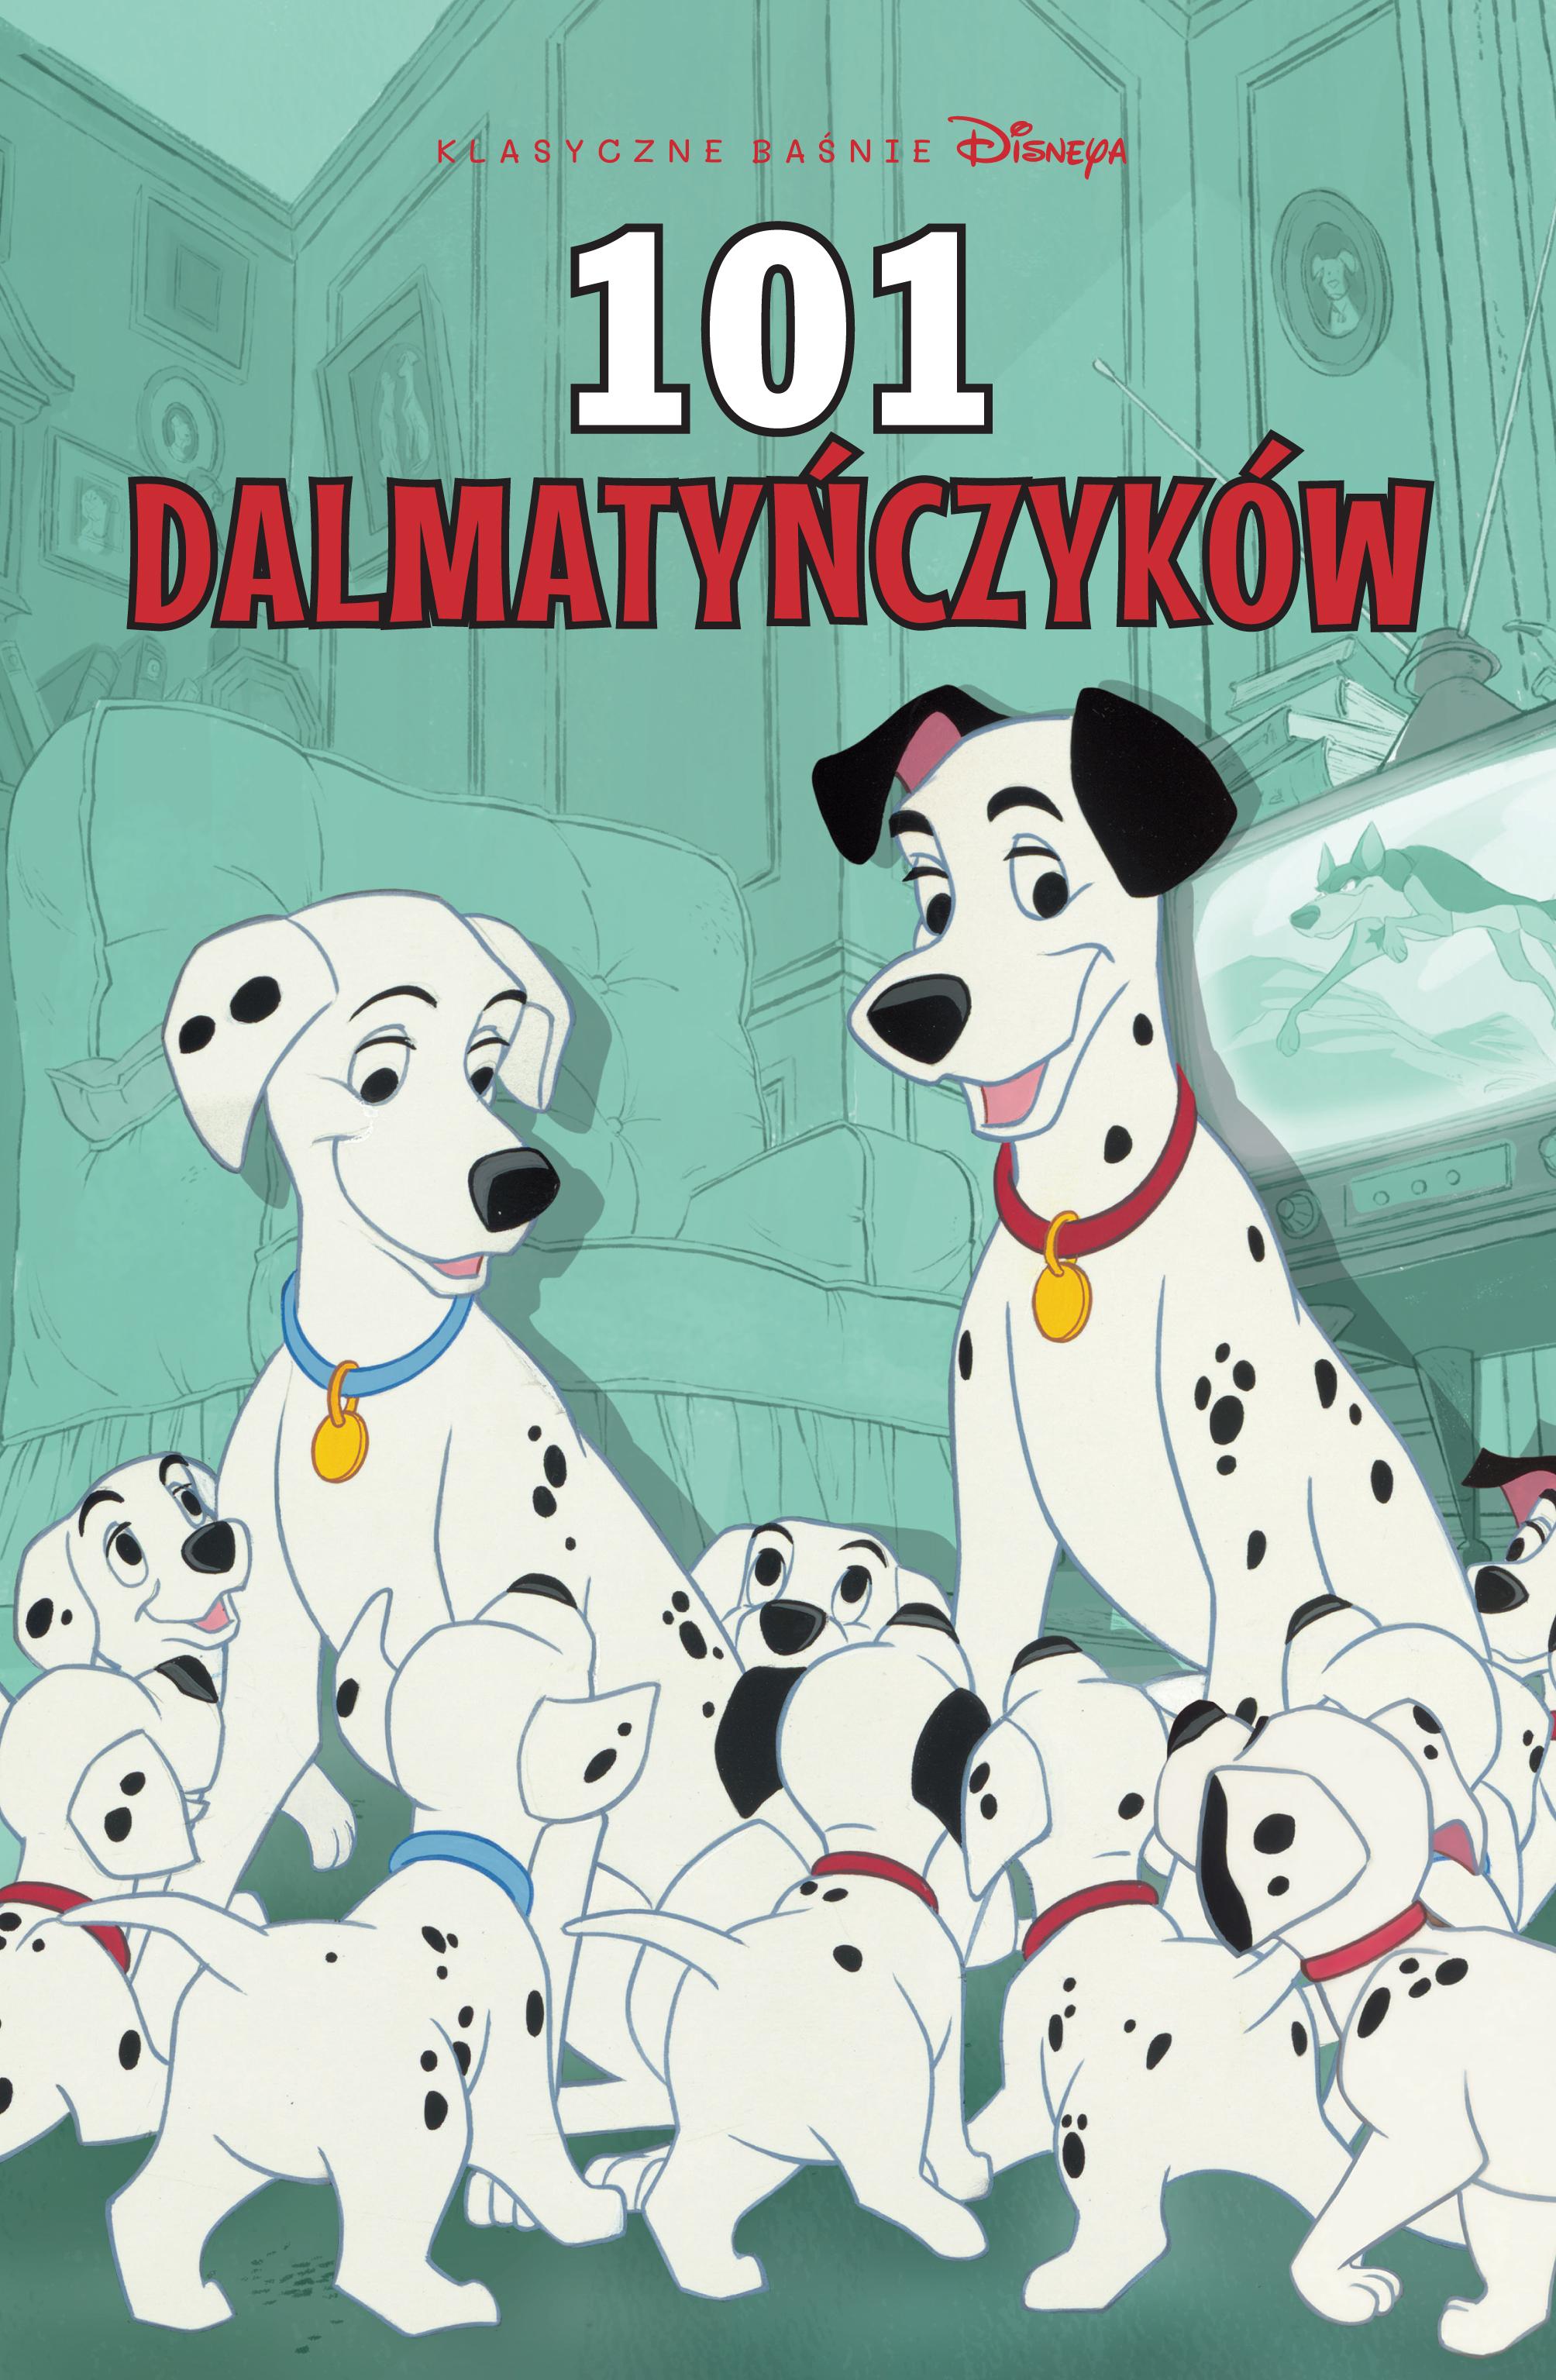 101 dalmatyńczyków. Klasyczne baśnie Disneya